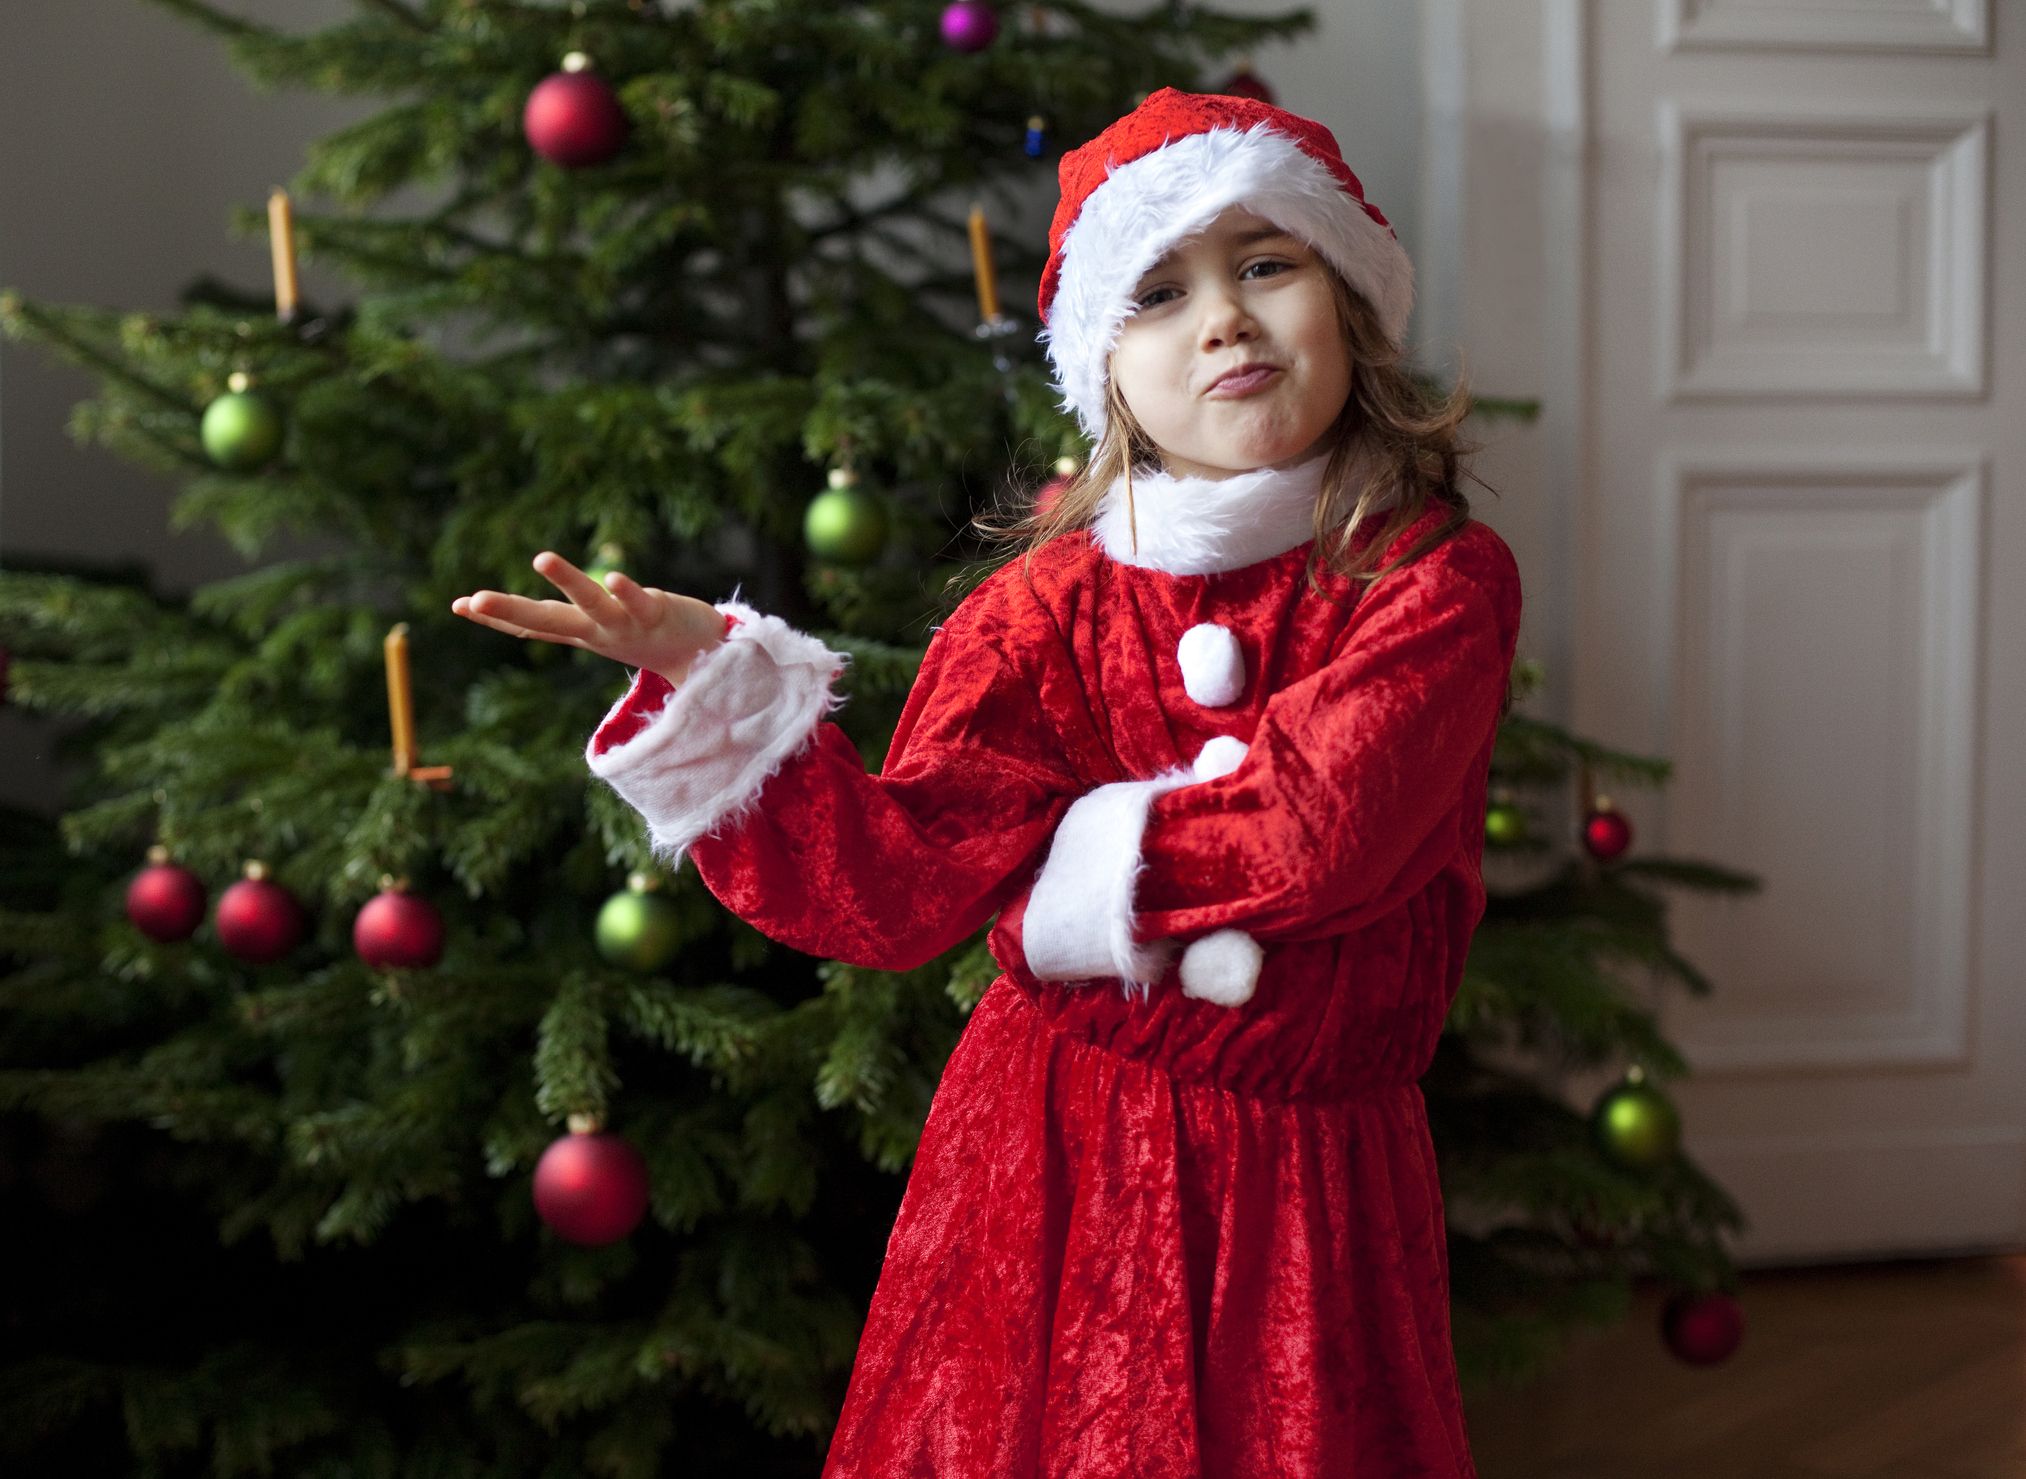 Frases de Navidad para niños: divertidas y originales